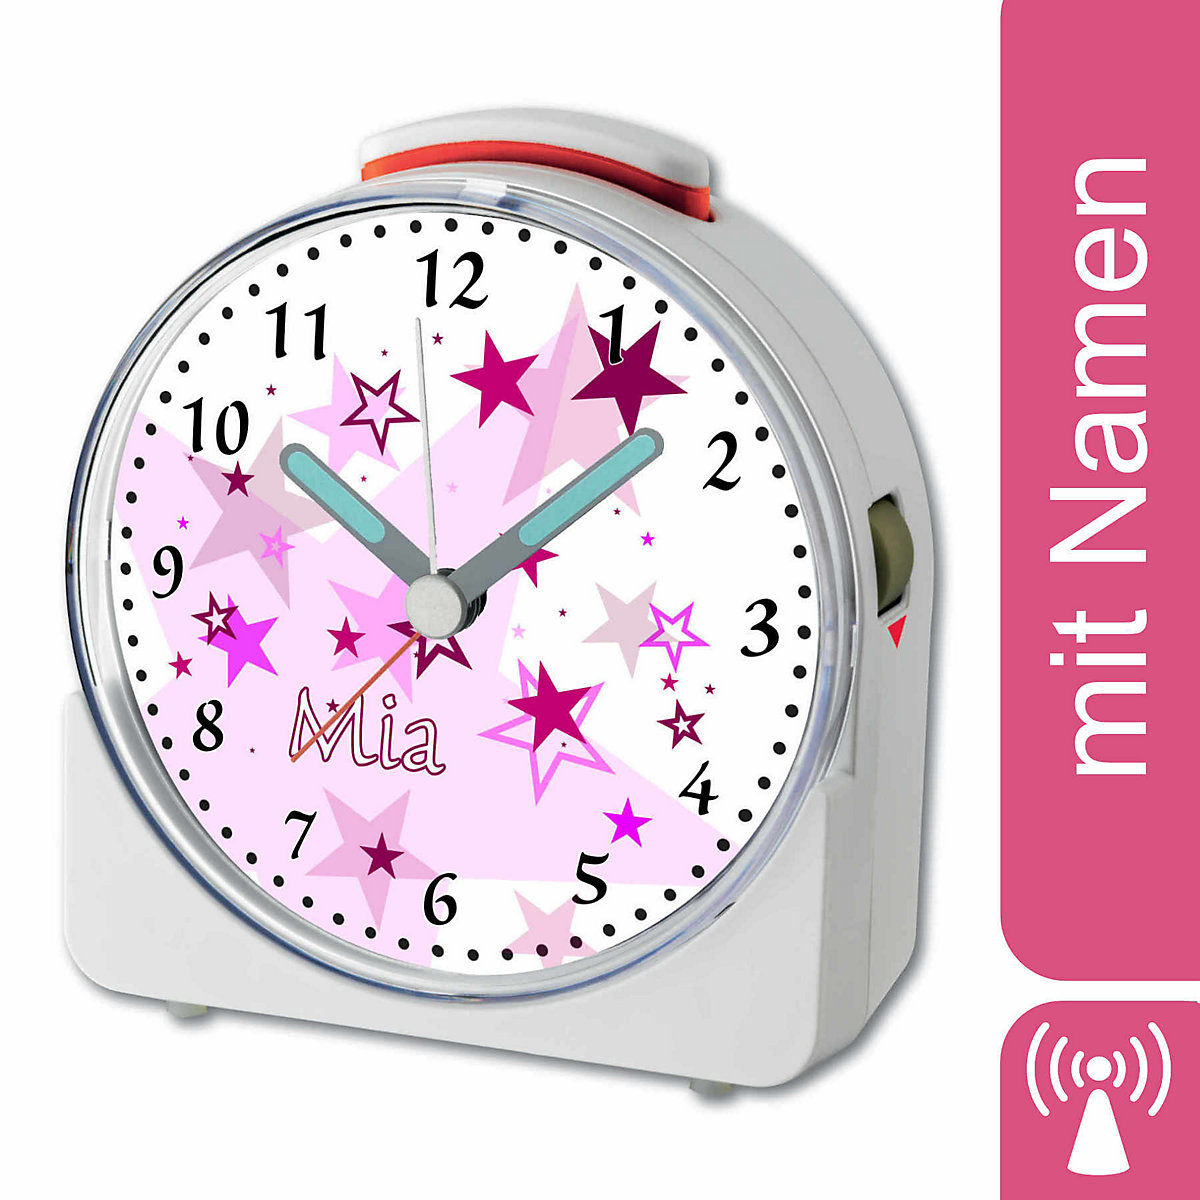 CreaDesign Kinder Funkwecker weiß personalisiert mit Namen Sterne Rosa 12-Stunden-Anzeigeformat Geräuschlos/Ohne Ticken Nachtlicht